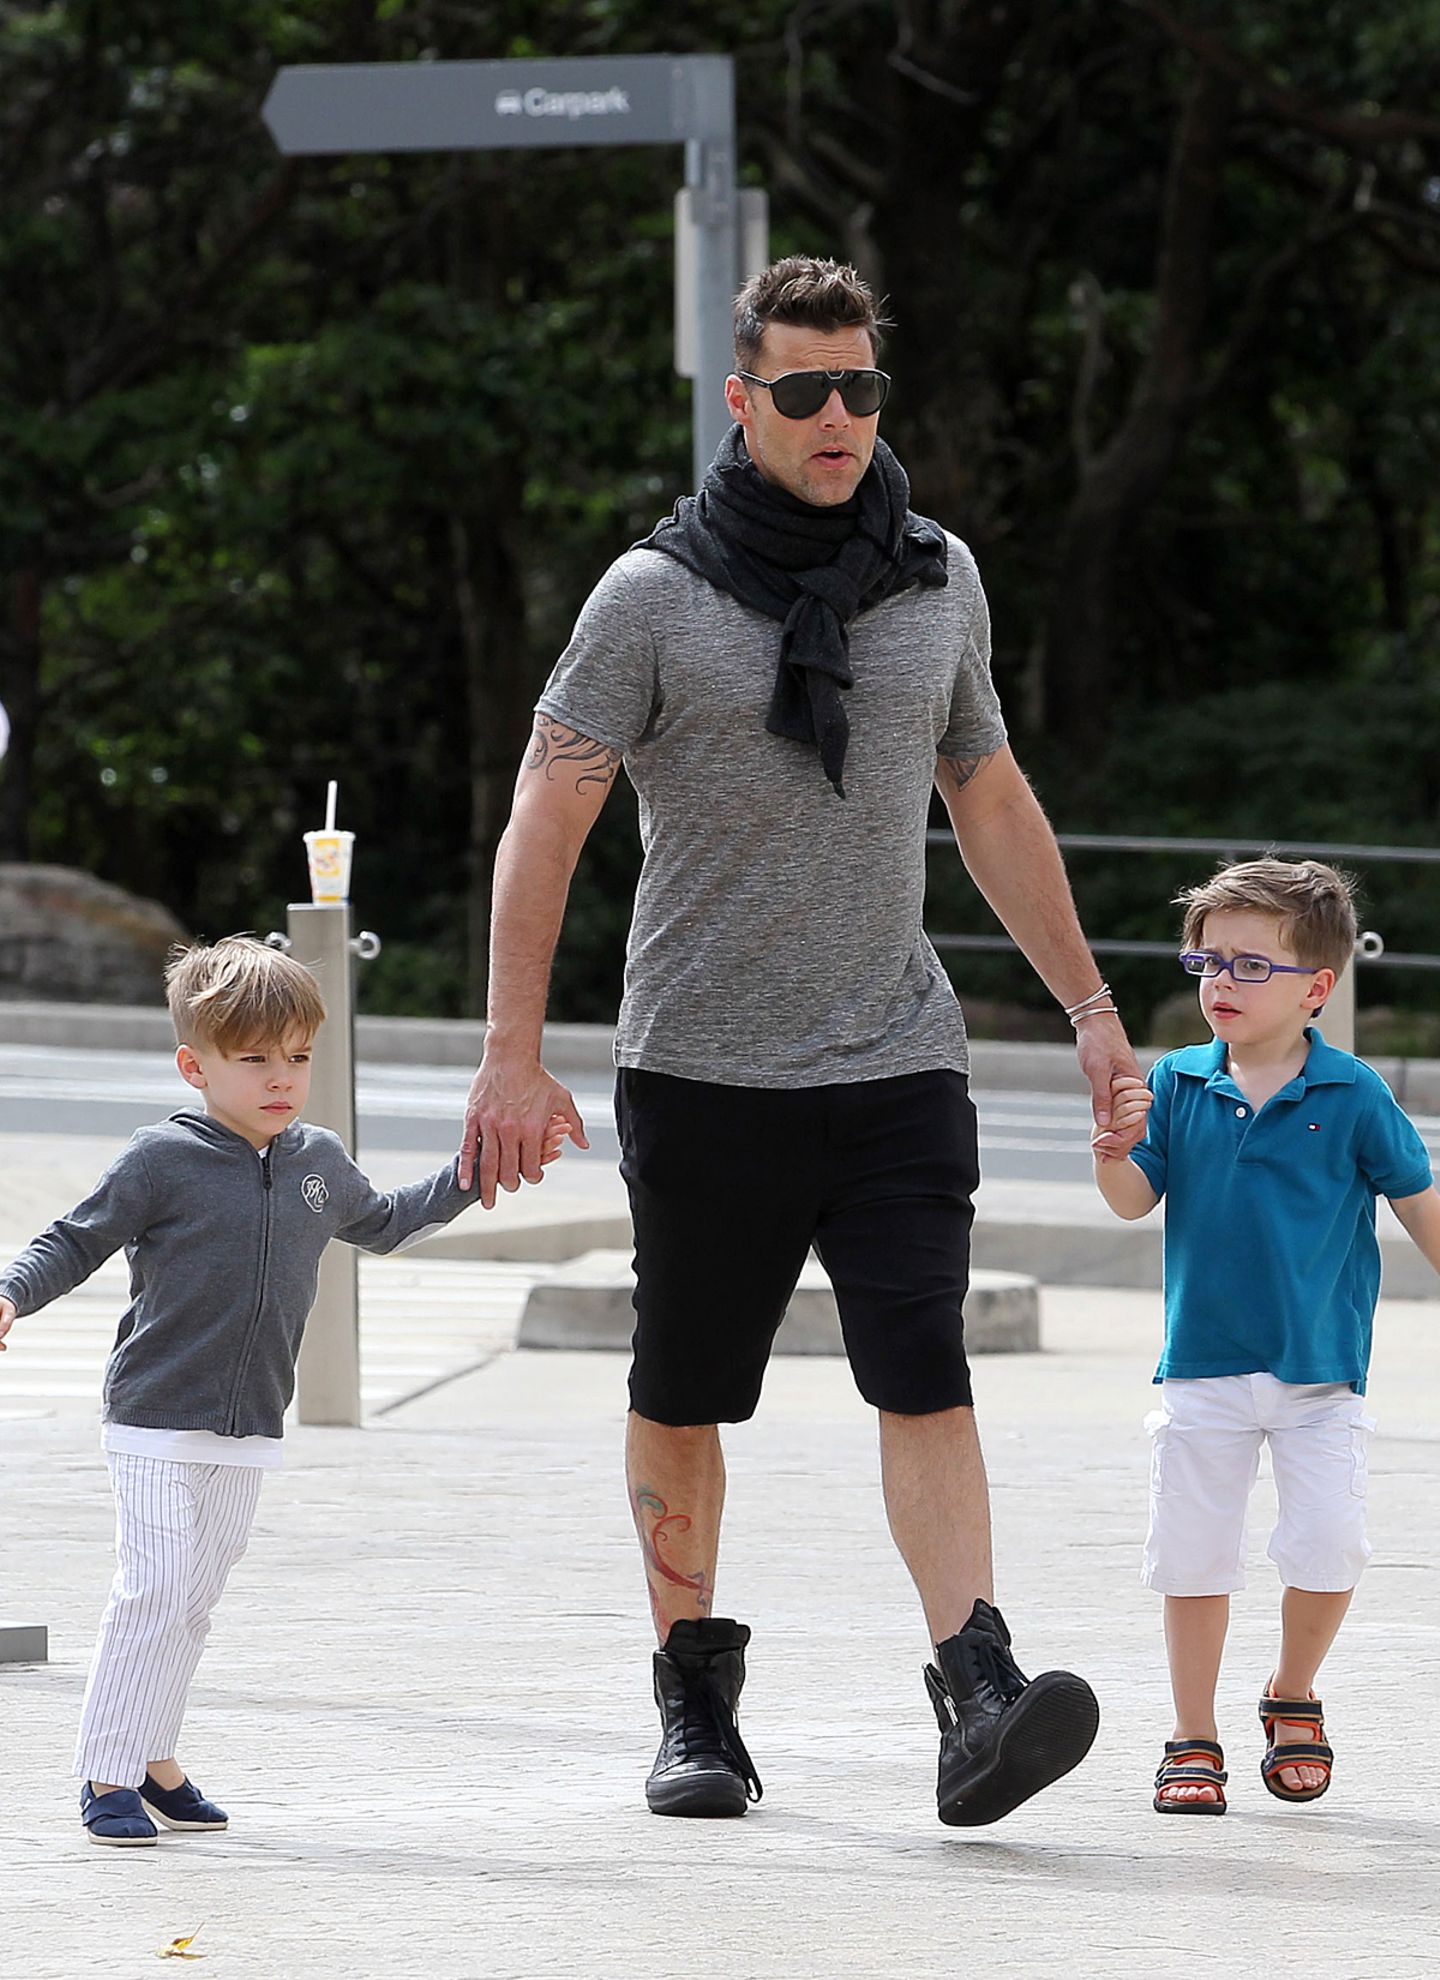 Ziemlich stylish sind auch die Söhne von Ricky Martin unterwegs. Valentino (li.) trägt einen angesagten Undercut, sein Bruder Matteo (re.) sieht mit seiner coolen Brille wie ein kleiner Hipster aus.